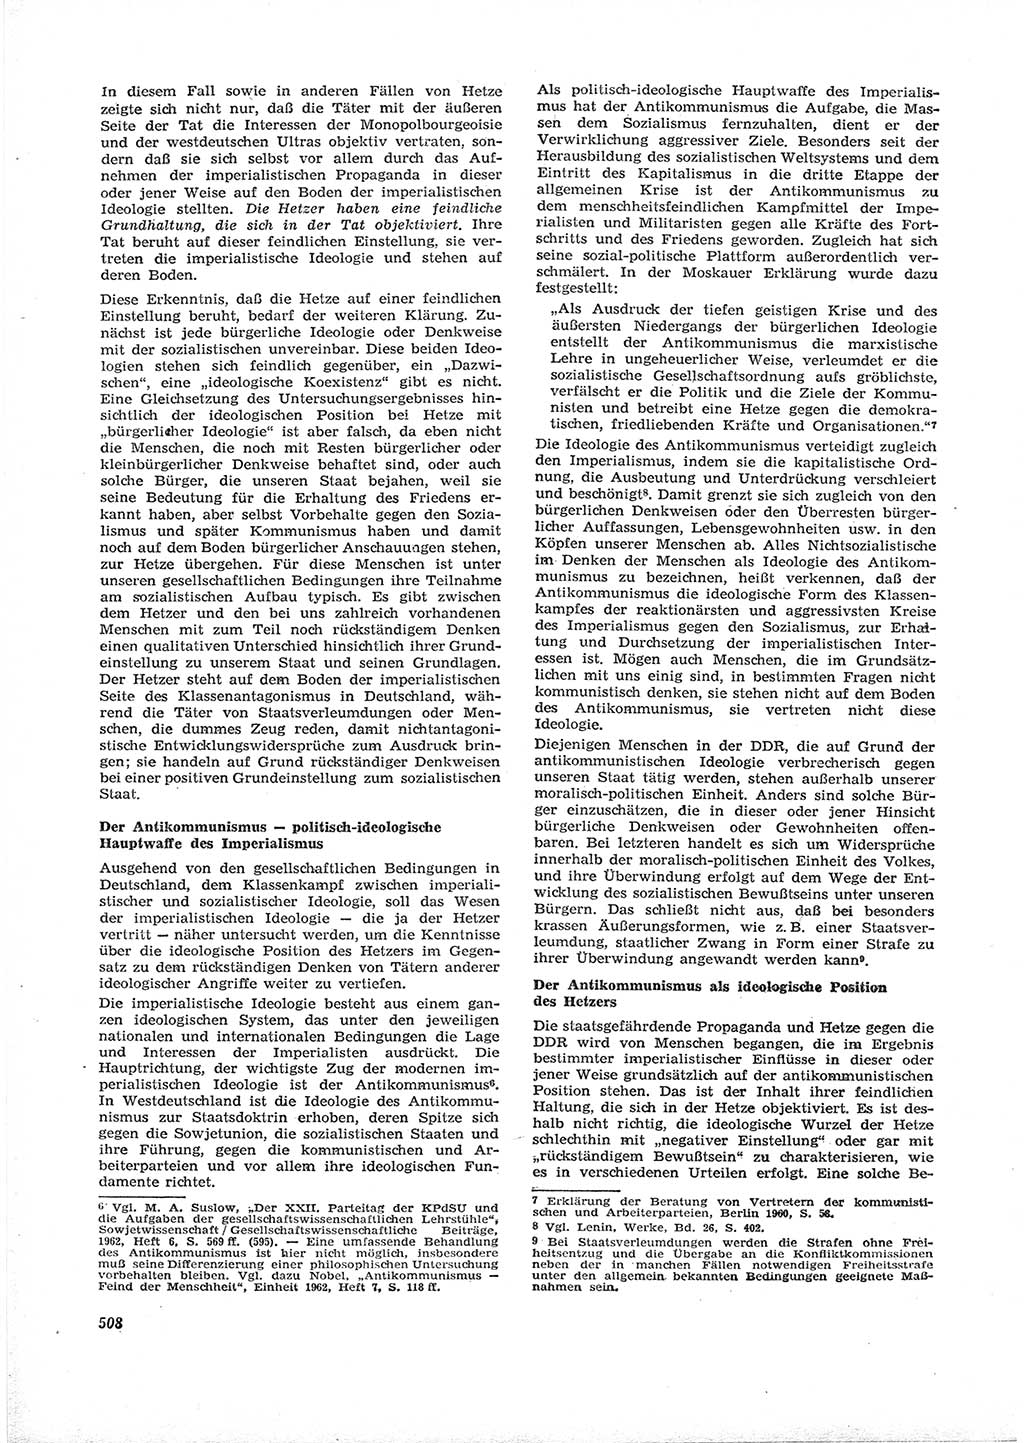 Neue Justiz (NJ), Zeitschrift für Recht und Rechtswissenschaft [Deutsche Demokratische Republik (DDR)], 16. Jahrgang 1962, Seite 508 (NJ DDR 1962, S. 508)